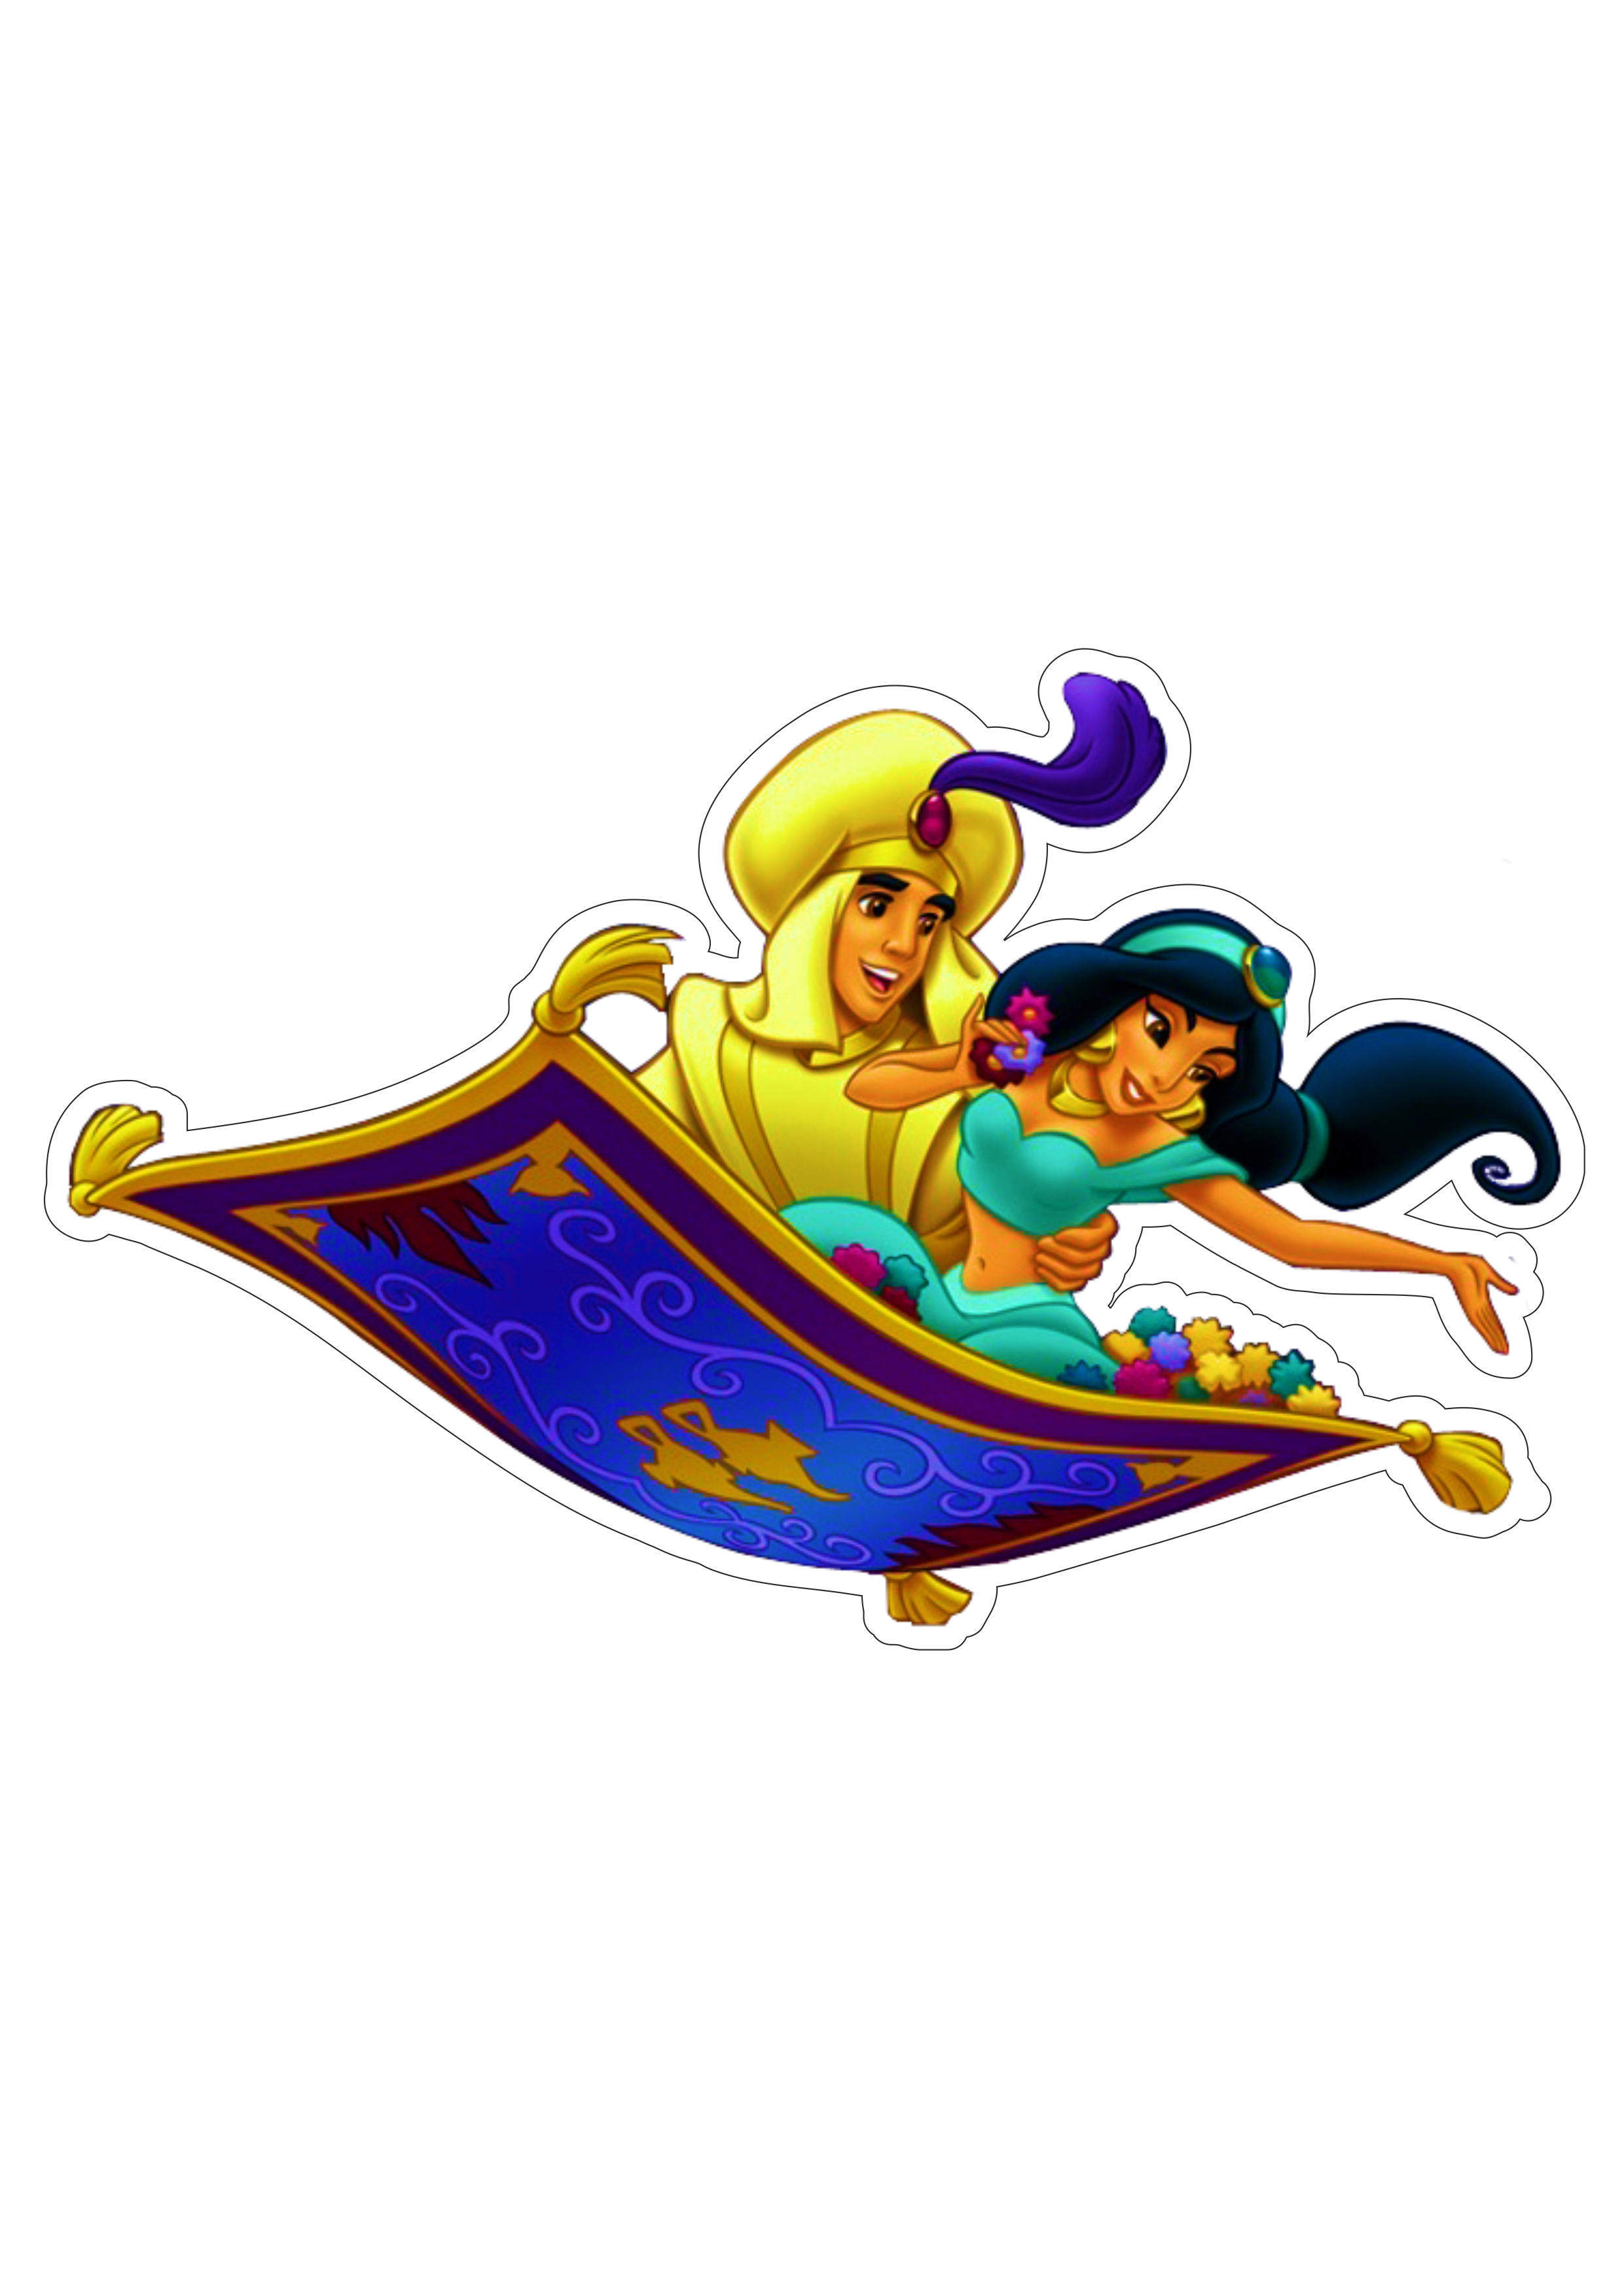 Jasmine e Aladdin no tapete voador princesas disney fundo transparente ilustração png